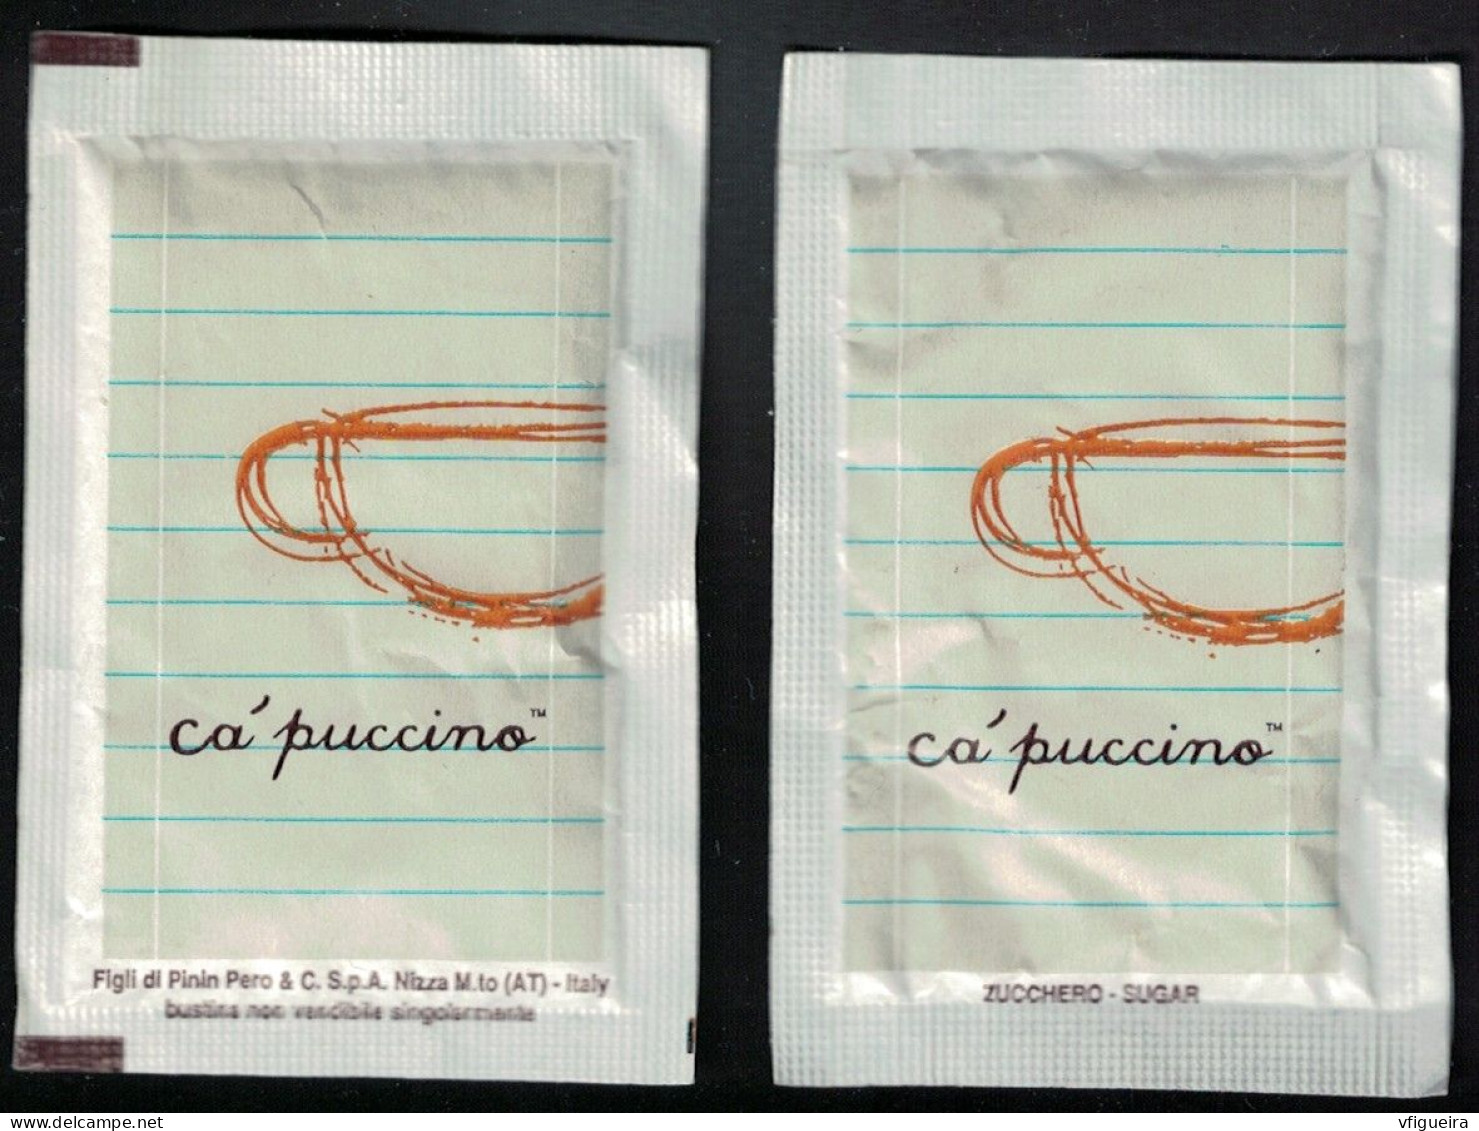 Italie Sachet Sucre Sugar Bag Capuccino Figli Di Pinin Pero White Blanc - Azúcar